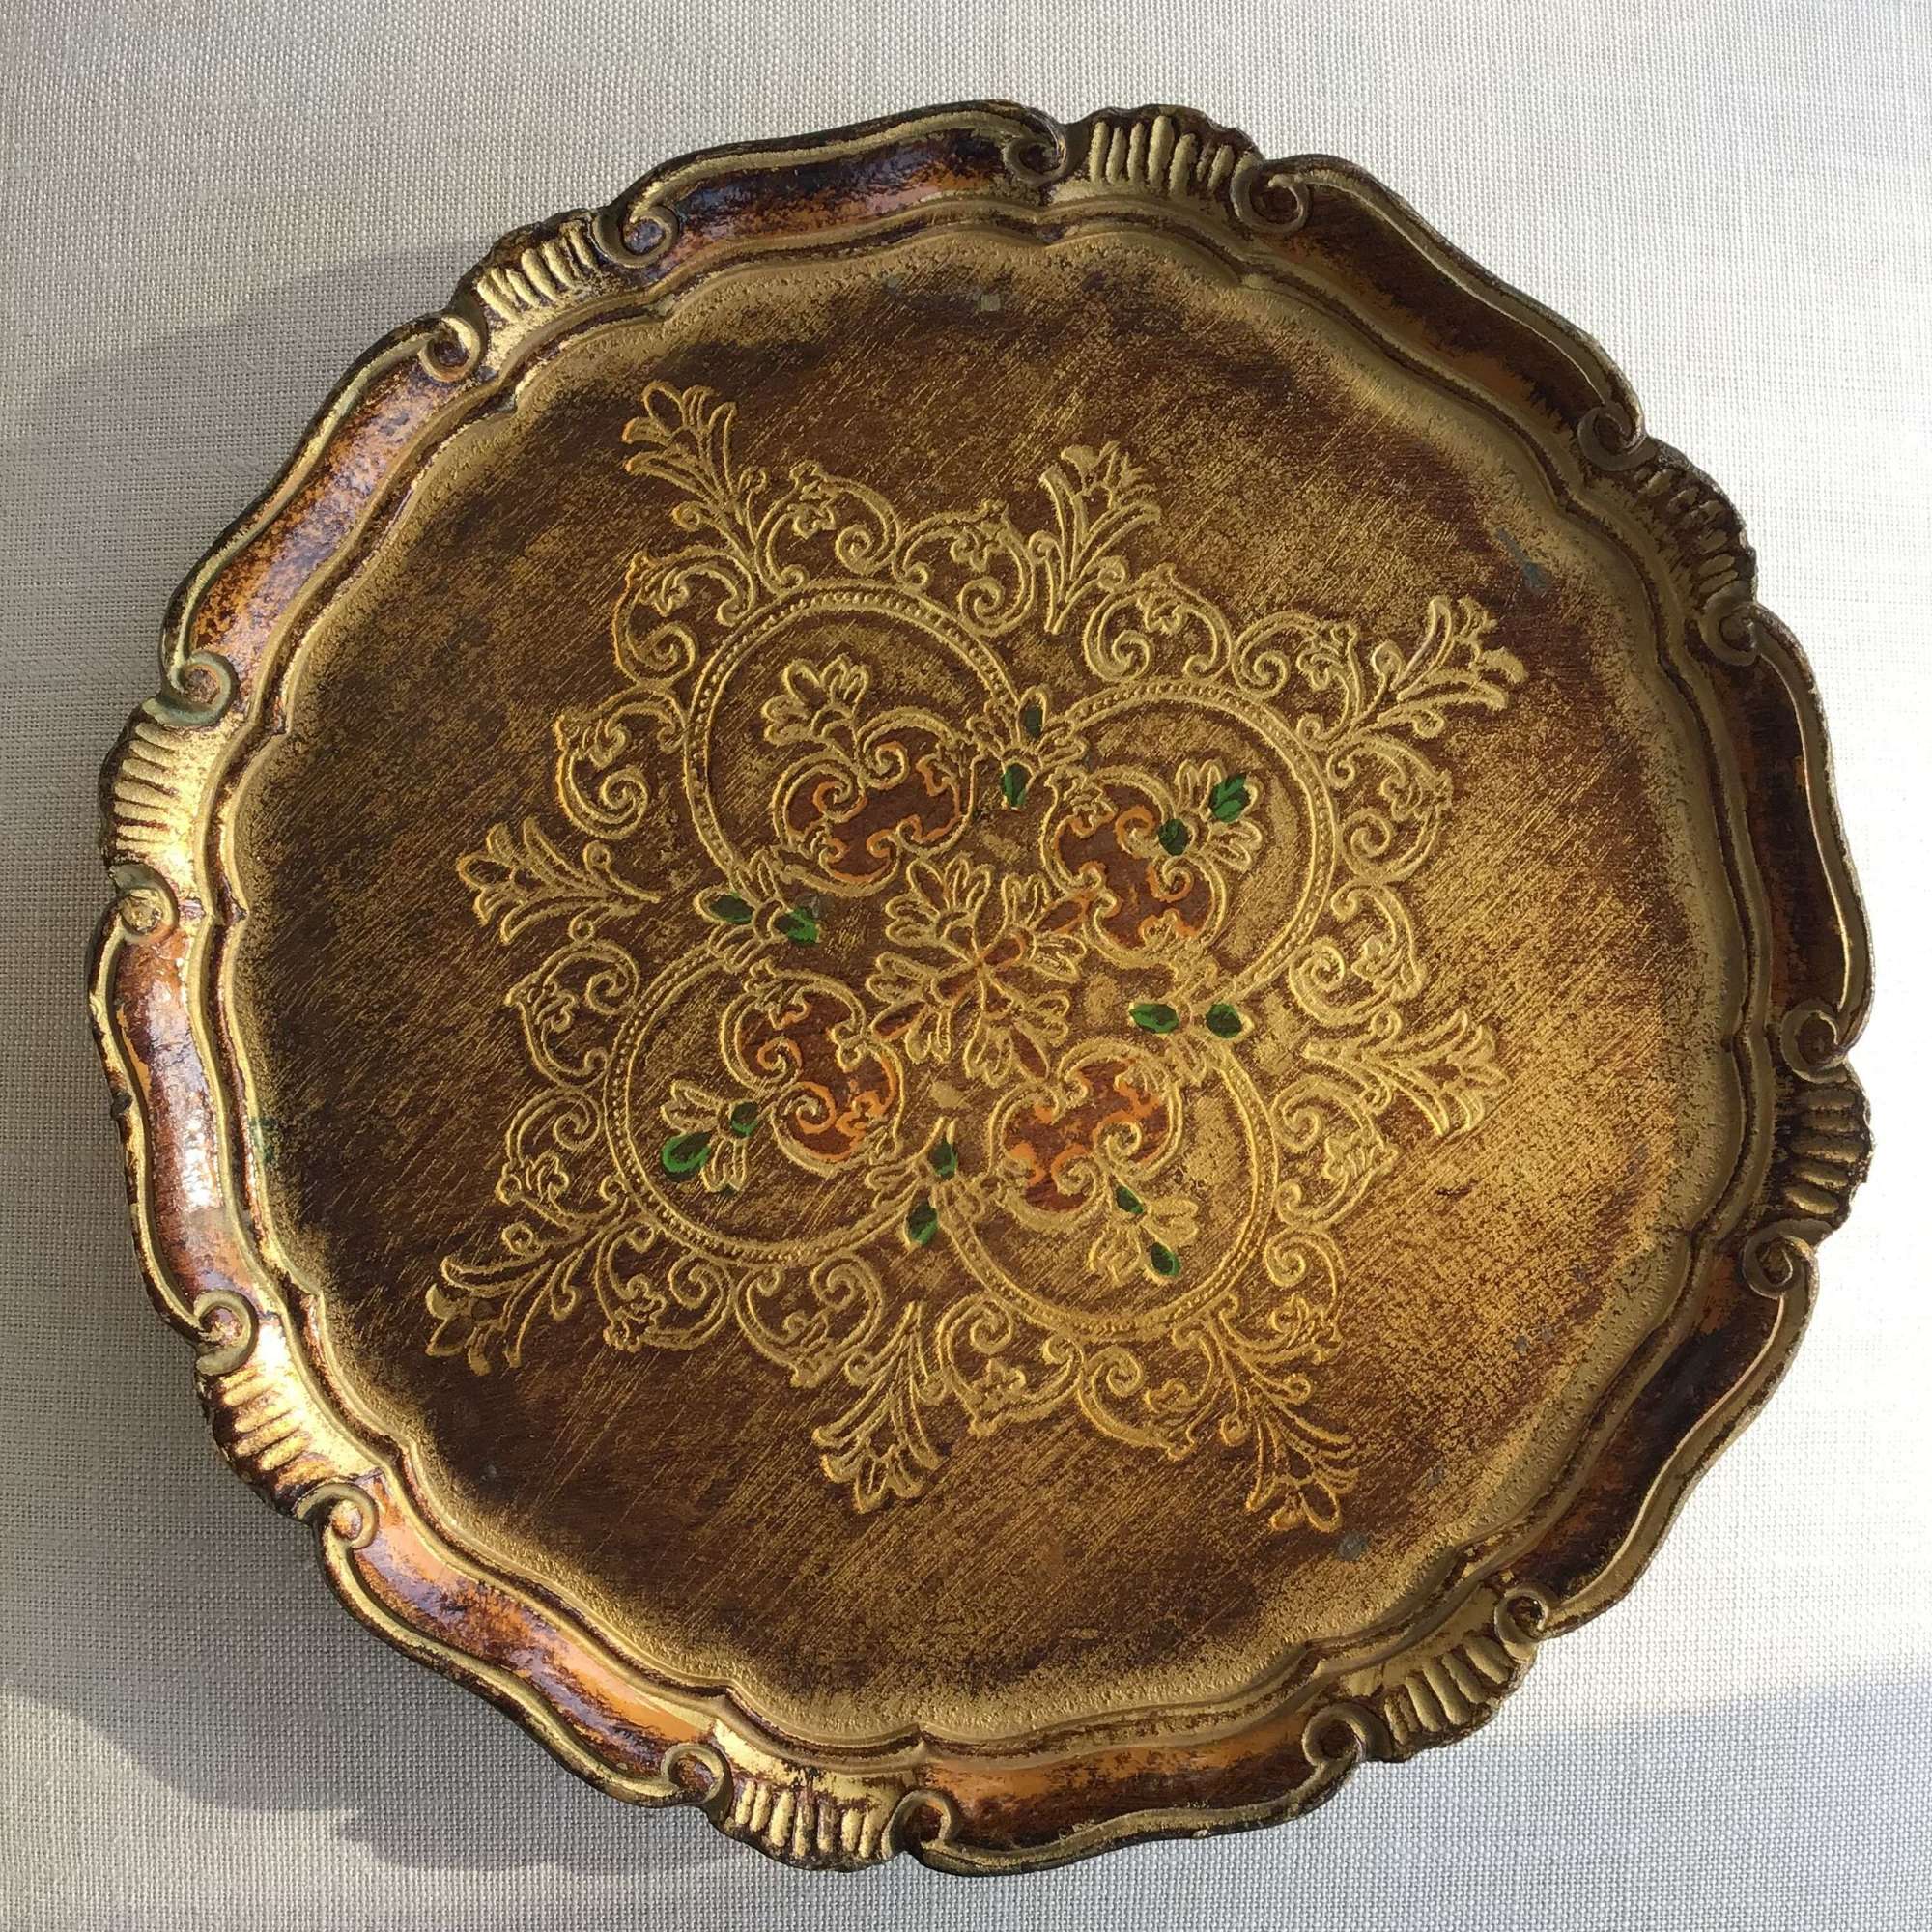 Vintage round wooden golden Florentine tray